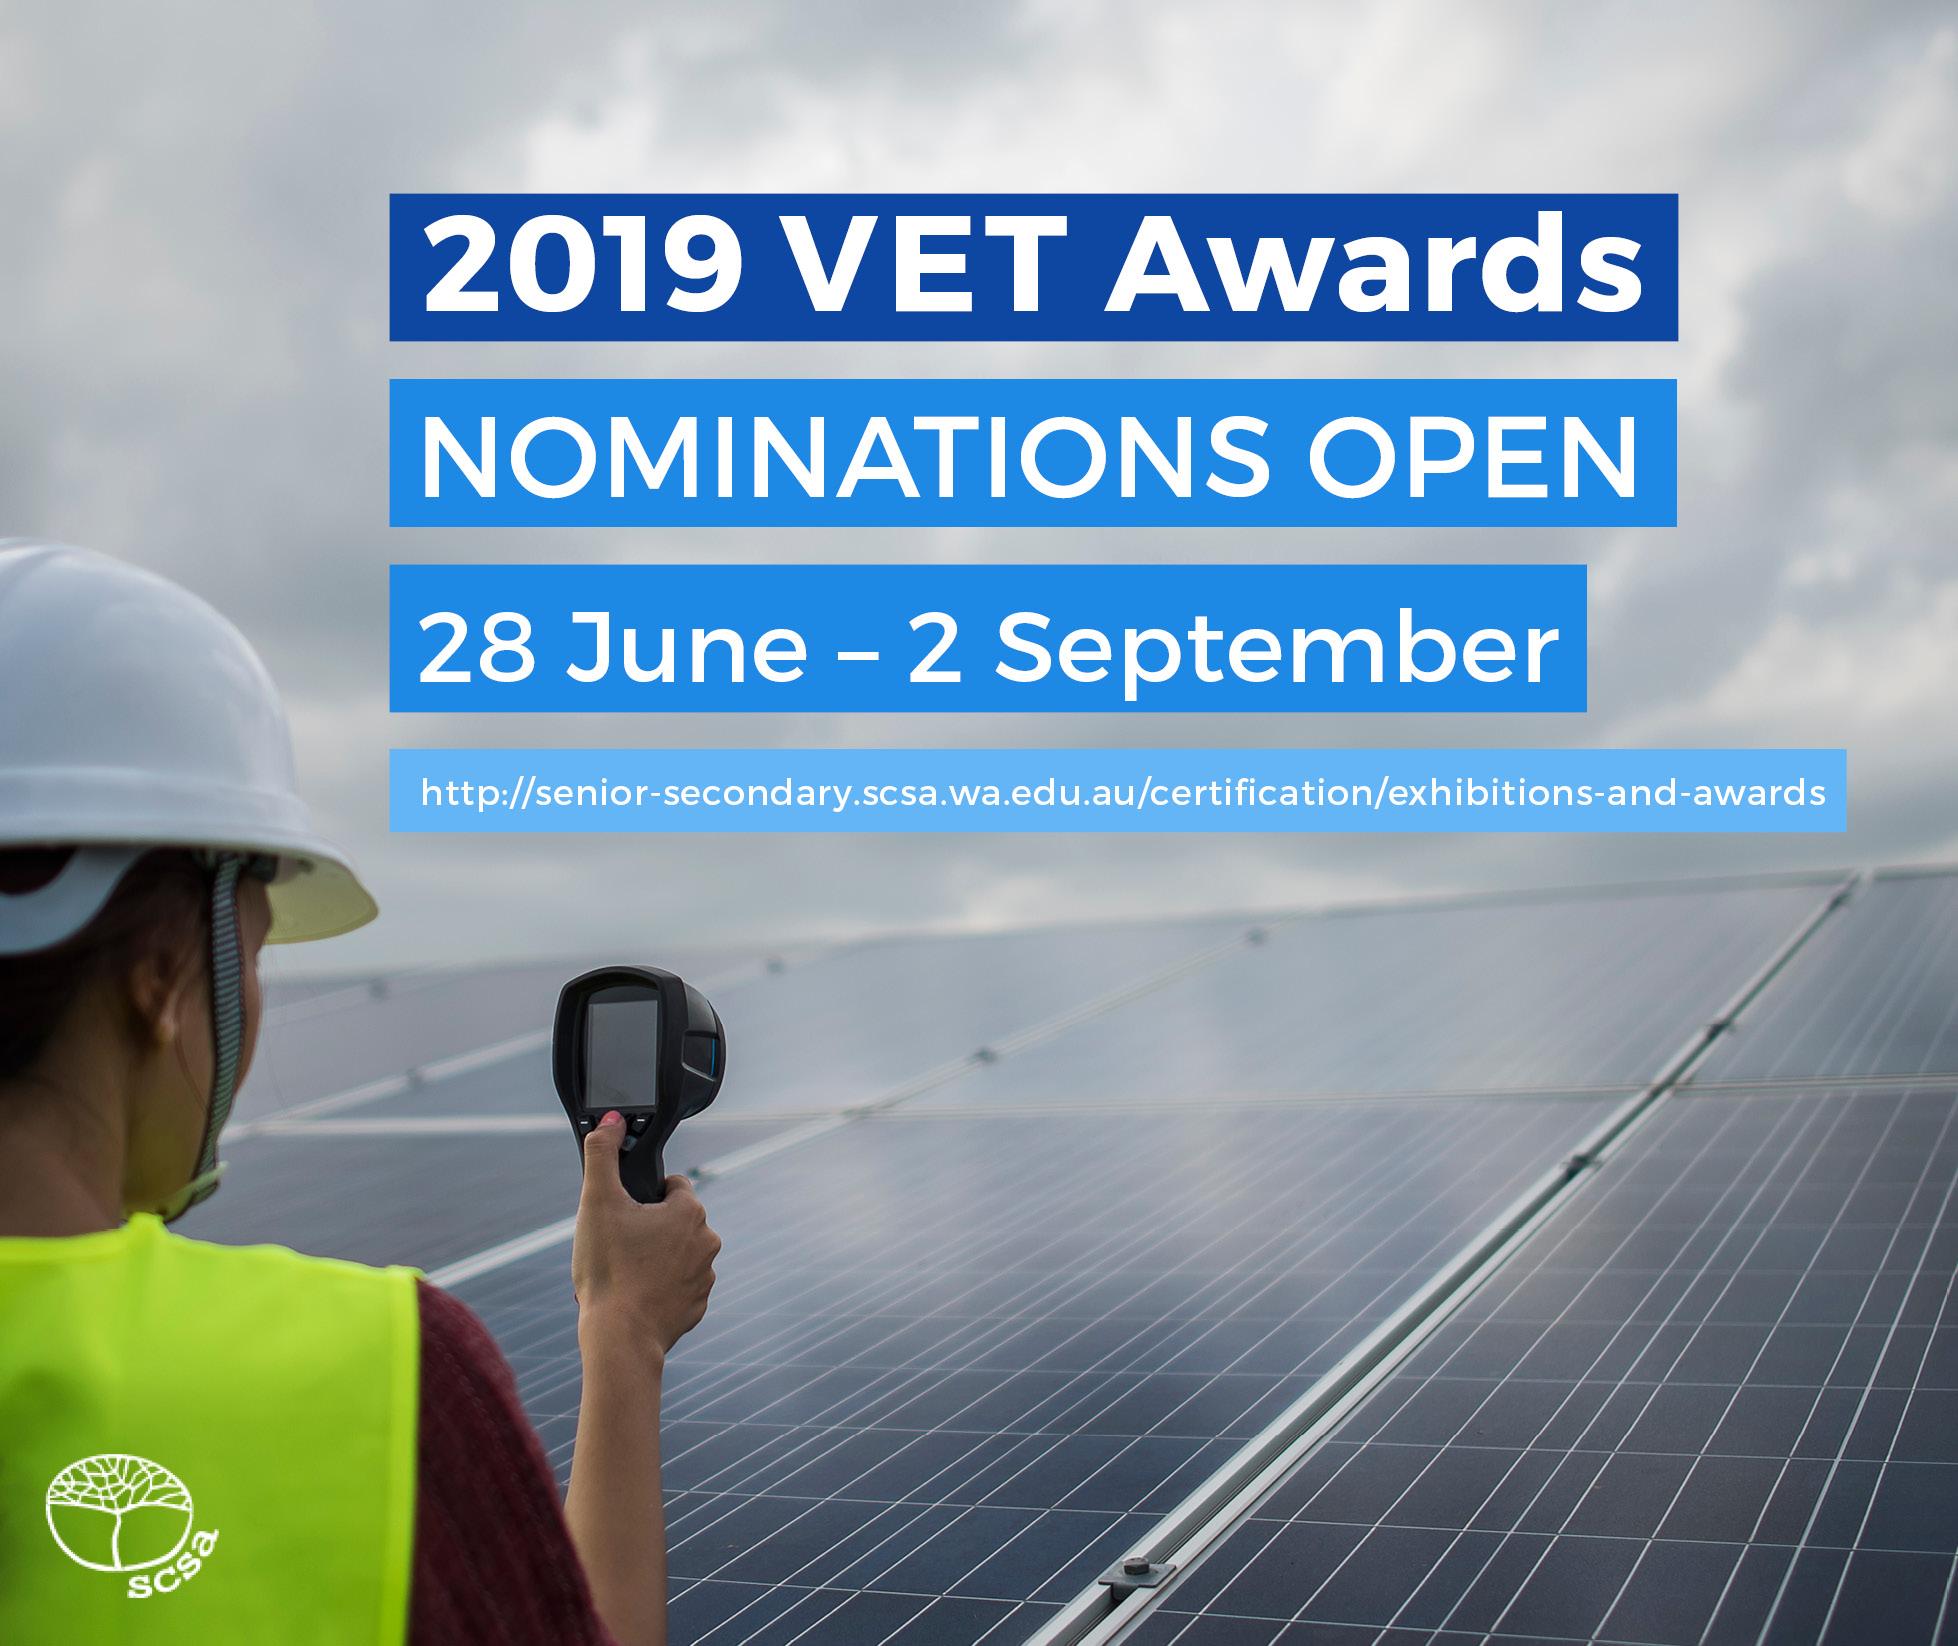 2019 vet awards nominations open 28 june to 2 september